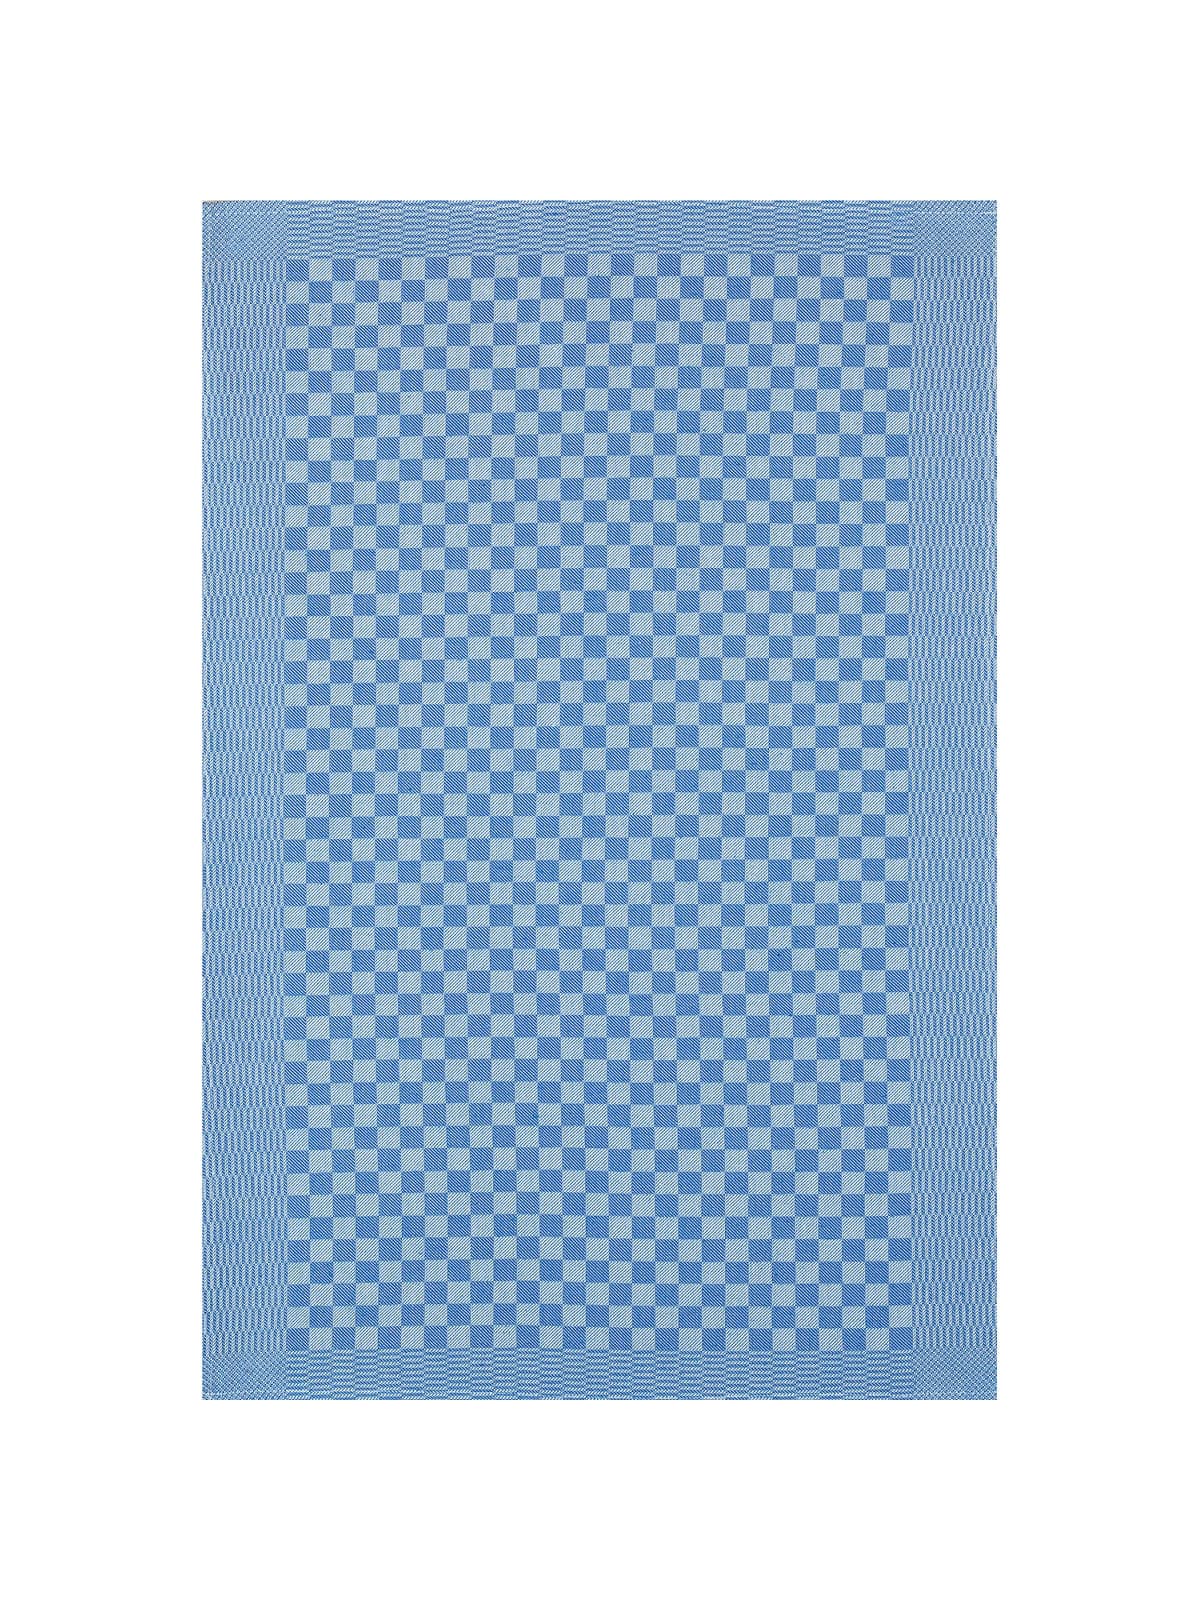 Pit Towel Blue - 12 Pcs by  Kitchen & Table Linens.